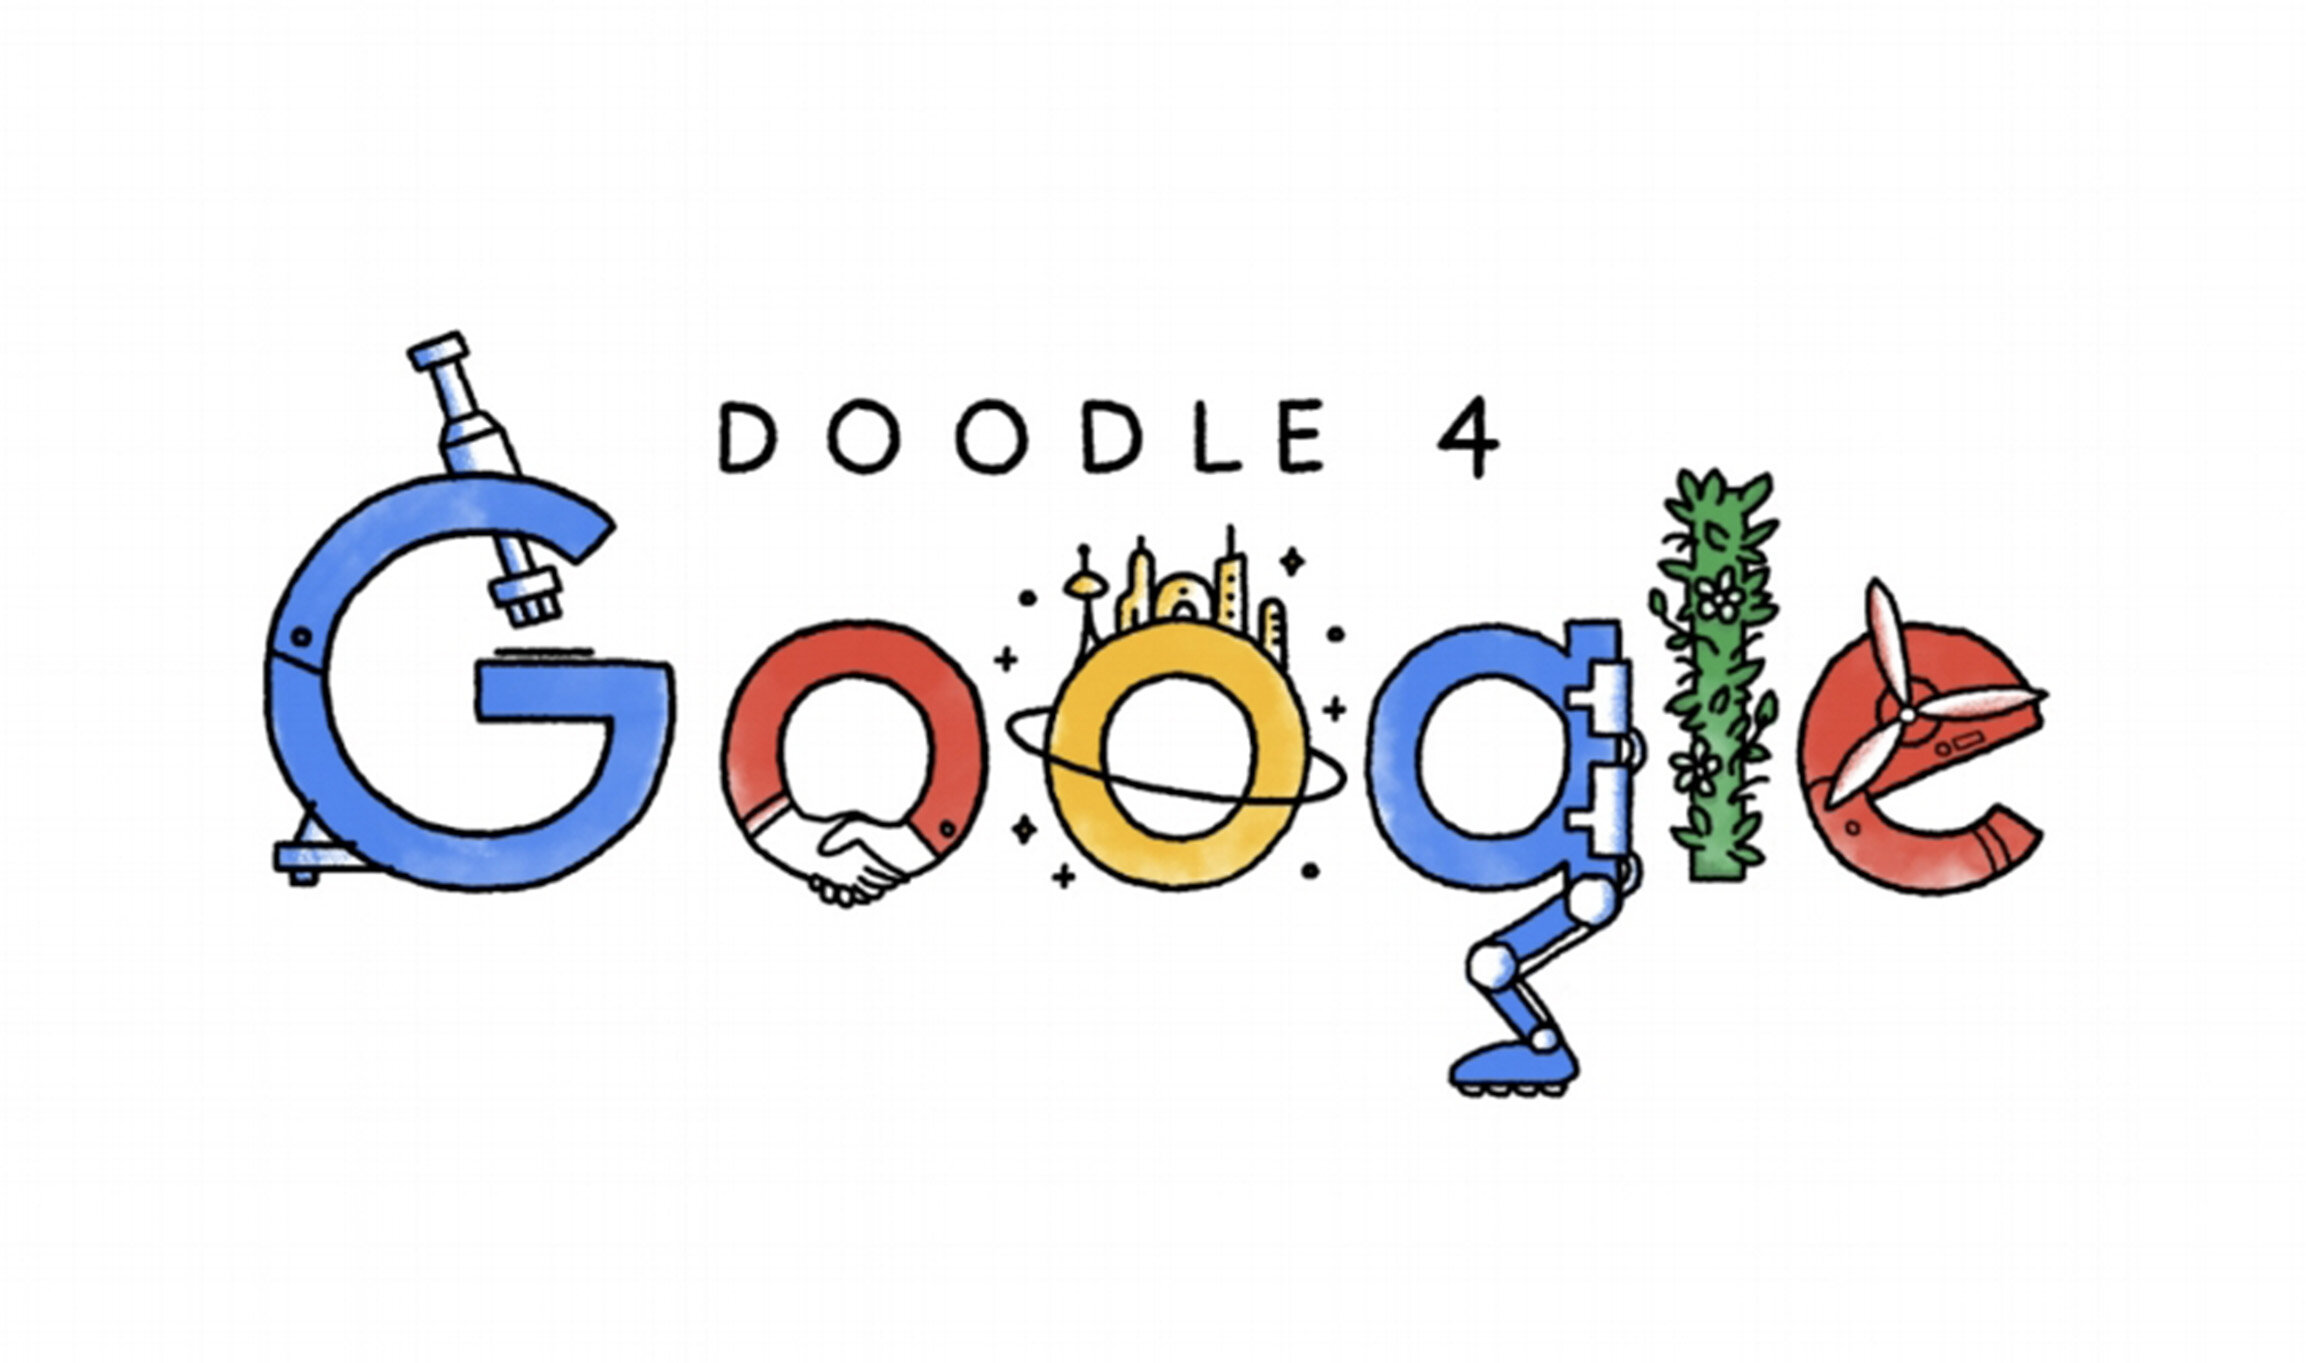 Тематический рисунок гугл. Гугл дудл. Логотипы гугла на праздники. Дудлы гугла на праздники. Красивый логотип гугл.